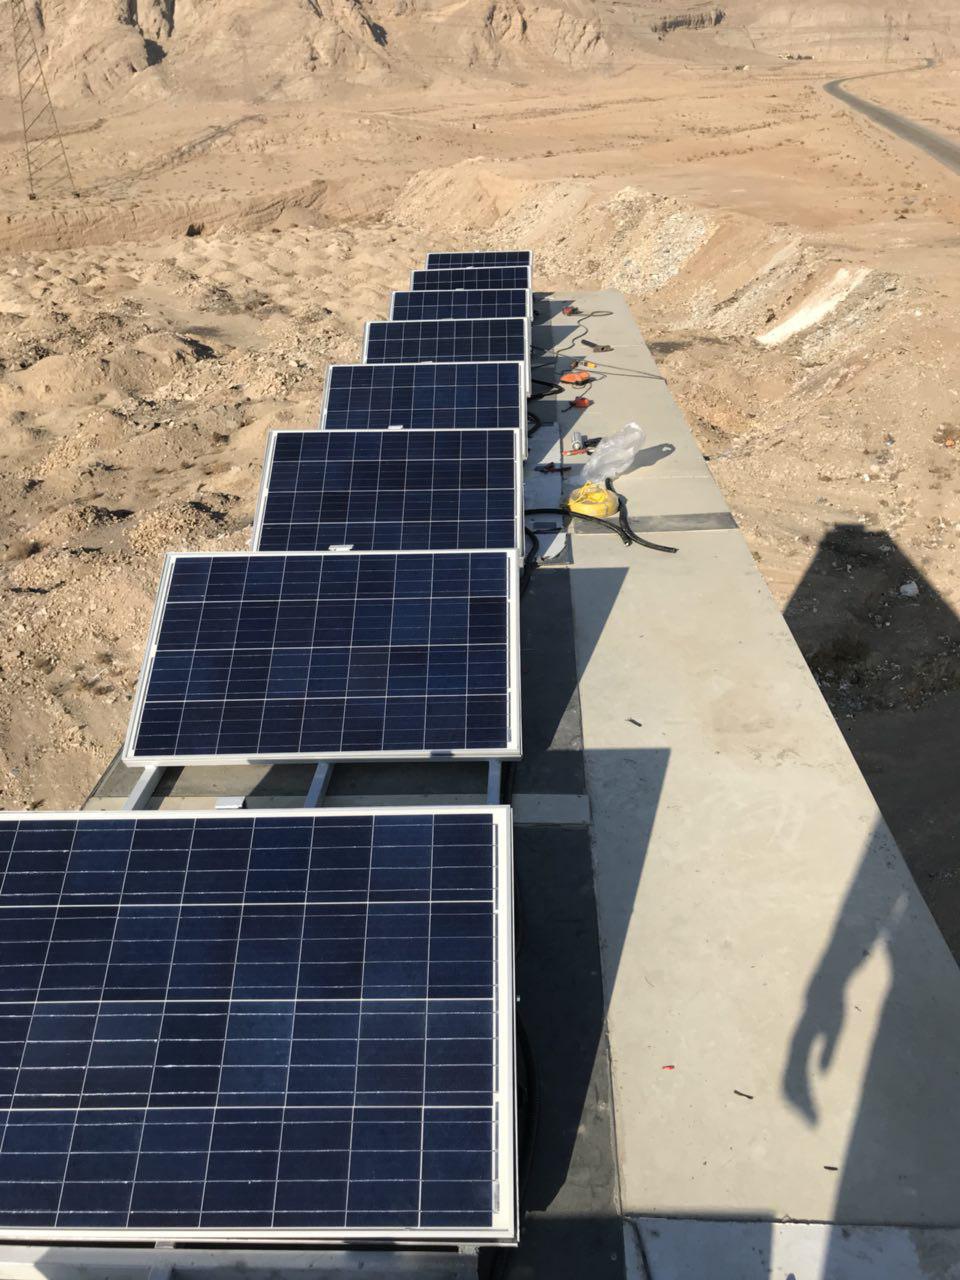  پرداخت تسهیلات برای راه اندازی ۴۰ پنل خورشیدی در نجف آباد